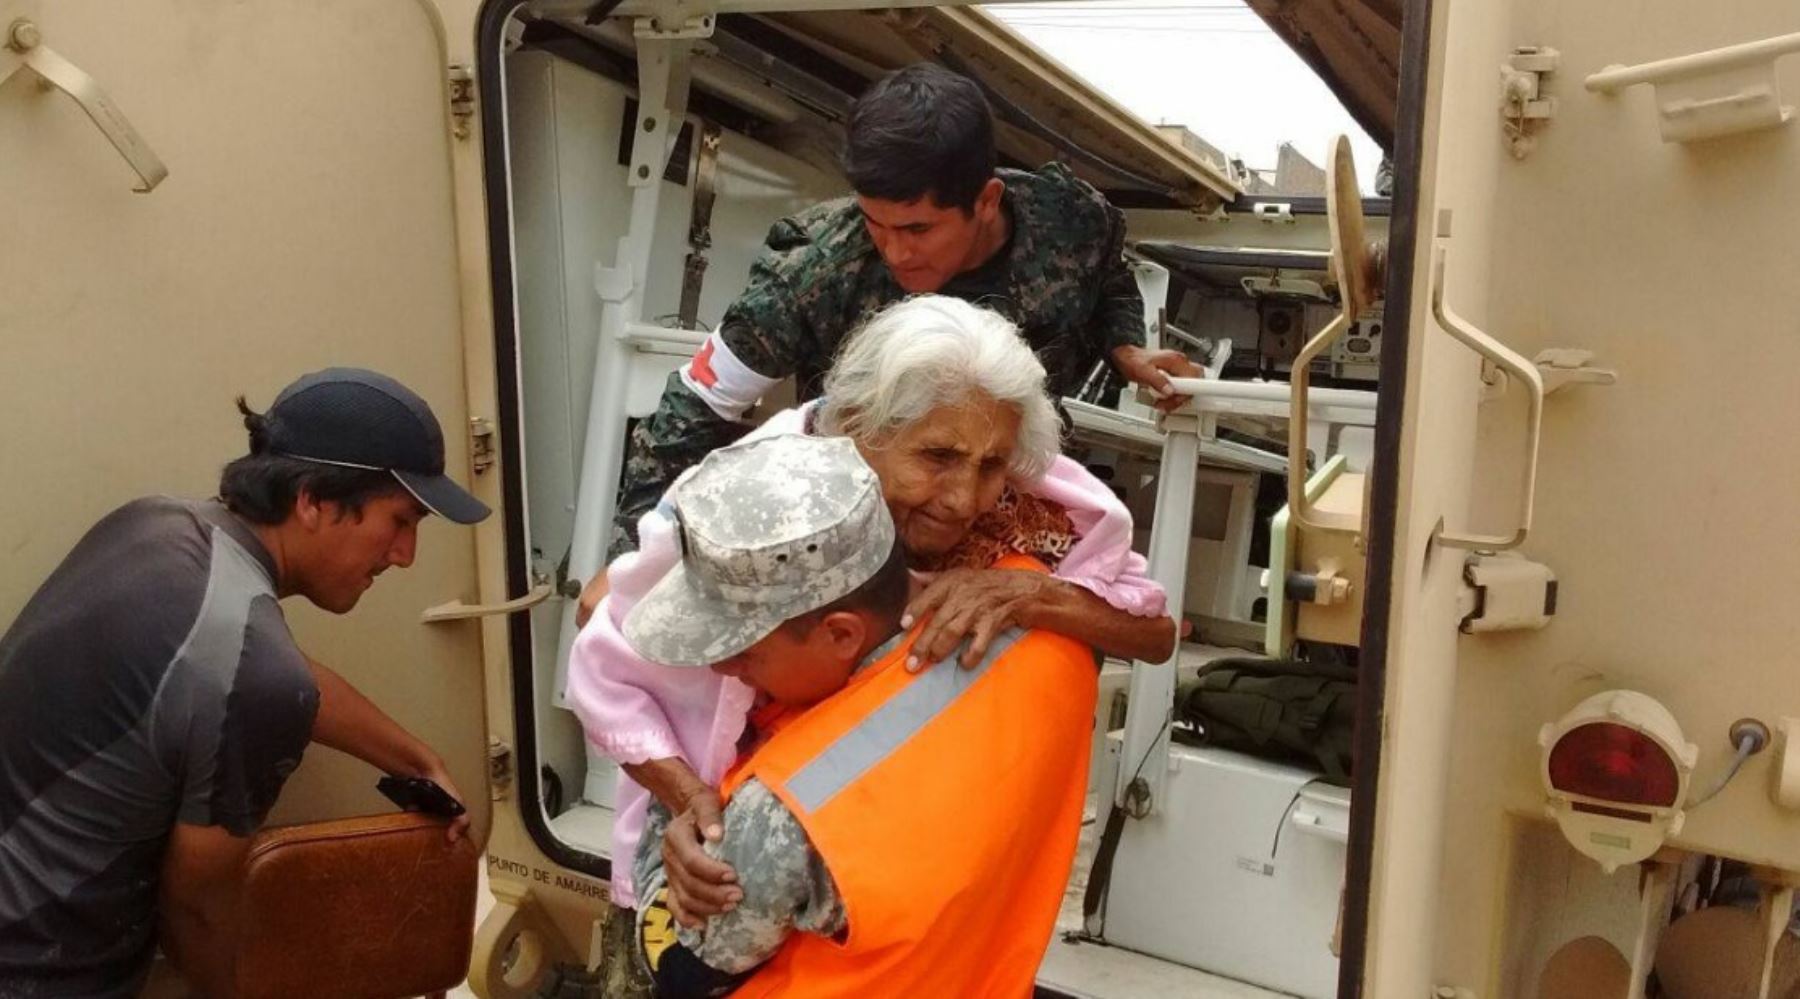 Las Fuerzas Armadas han desplegado hasta la fecha 4,164 efectivos para apoyar a la población de las regiones afectadas por huaicos, desbordes de ríos, inundaciones, deslizamientos y otras emergencias ocasionadas por las torrenciales lluvias, informó el Centro de Operaciones de Emergencia Nacional (COEN).